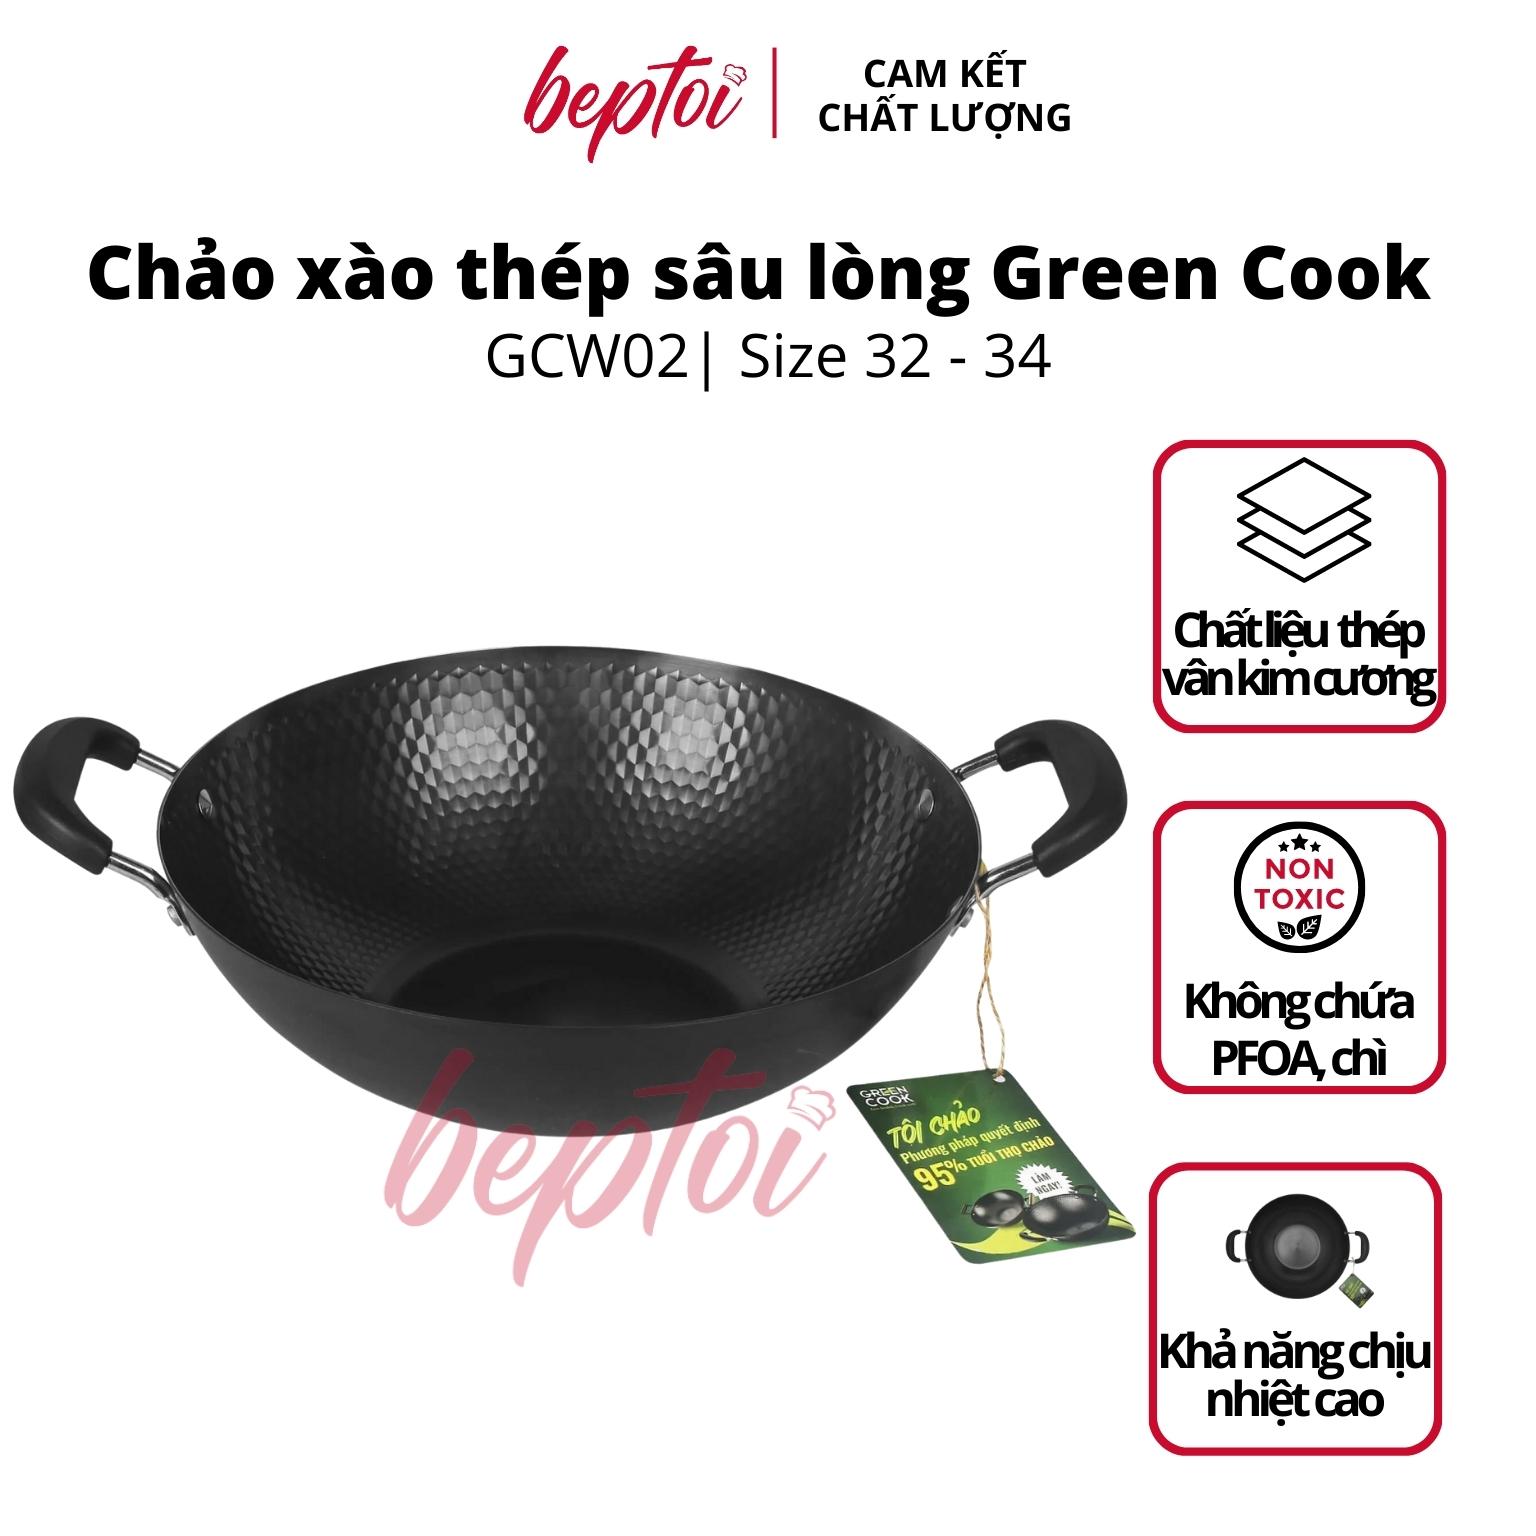 Chảo xào thép sâu lòng vân kim cương Green Cook GCW02 chống dính tự nhiên dùng được trên tất cả các loại bếp